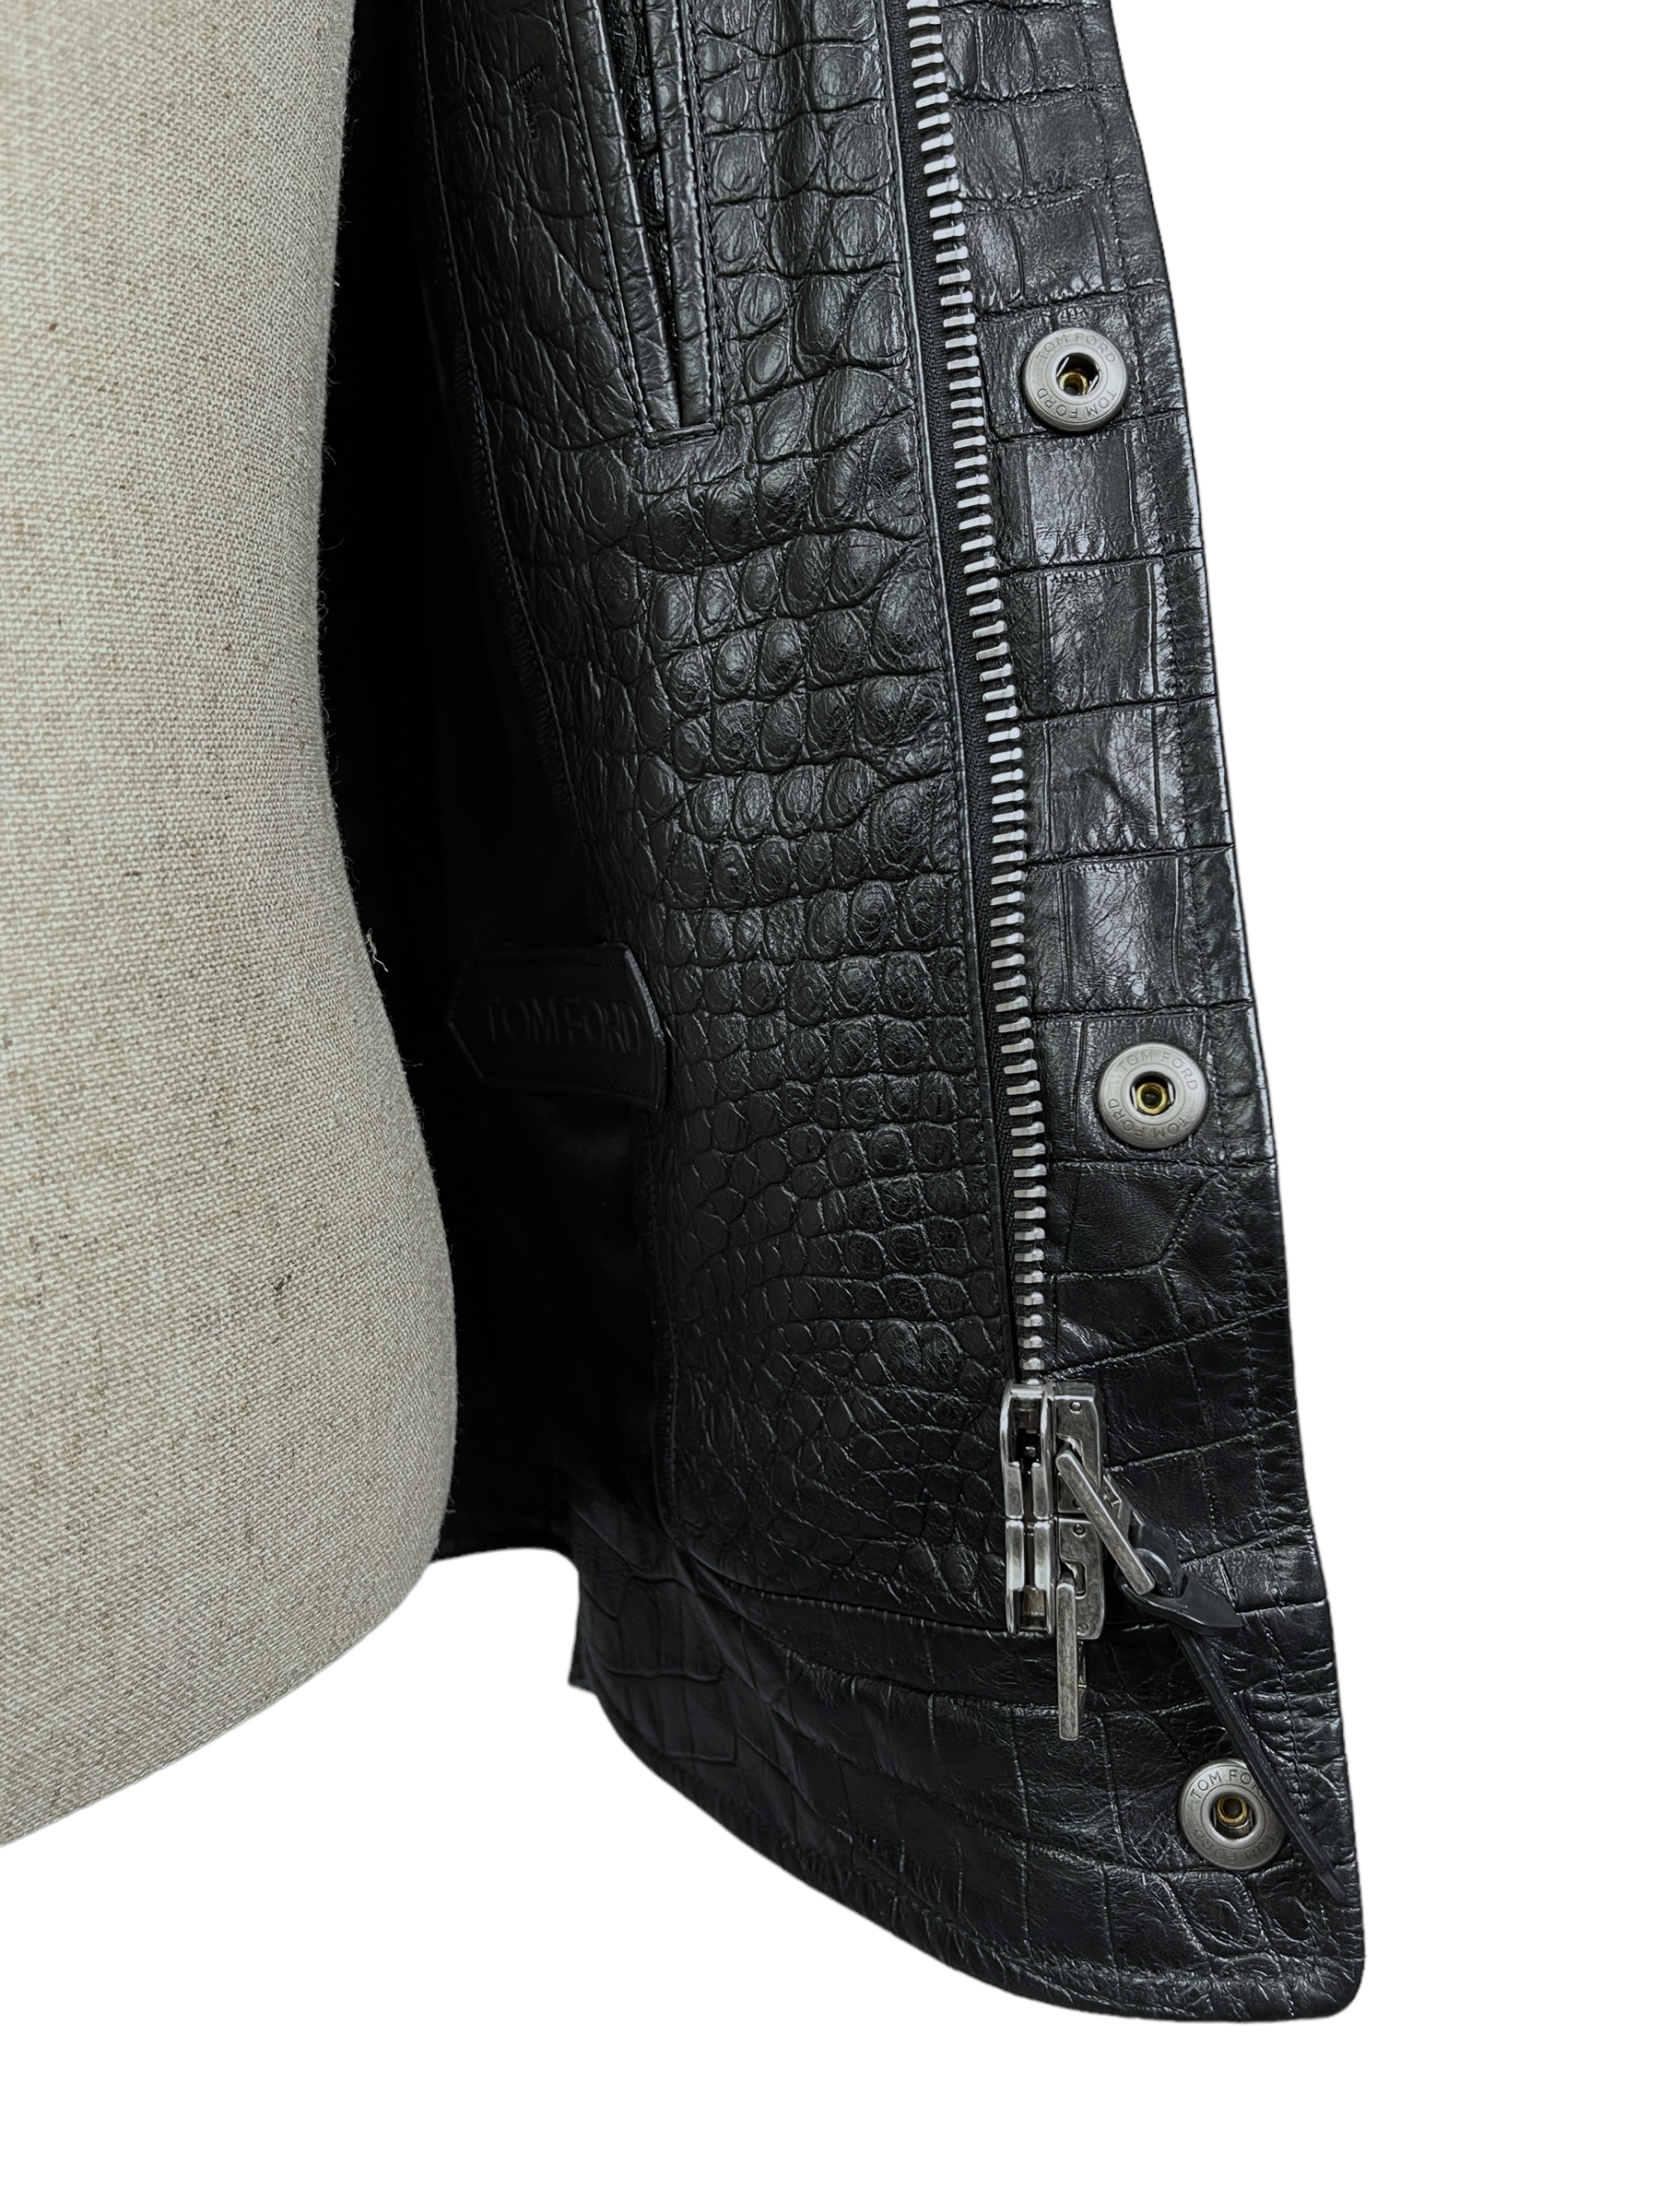 Pre-owned Matte Black Genuine Crocodile/alligator Leather Skin For  Jacket,biker Jacket